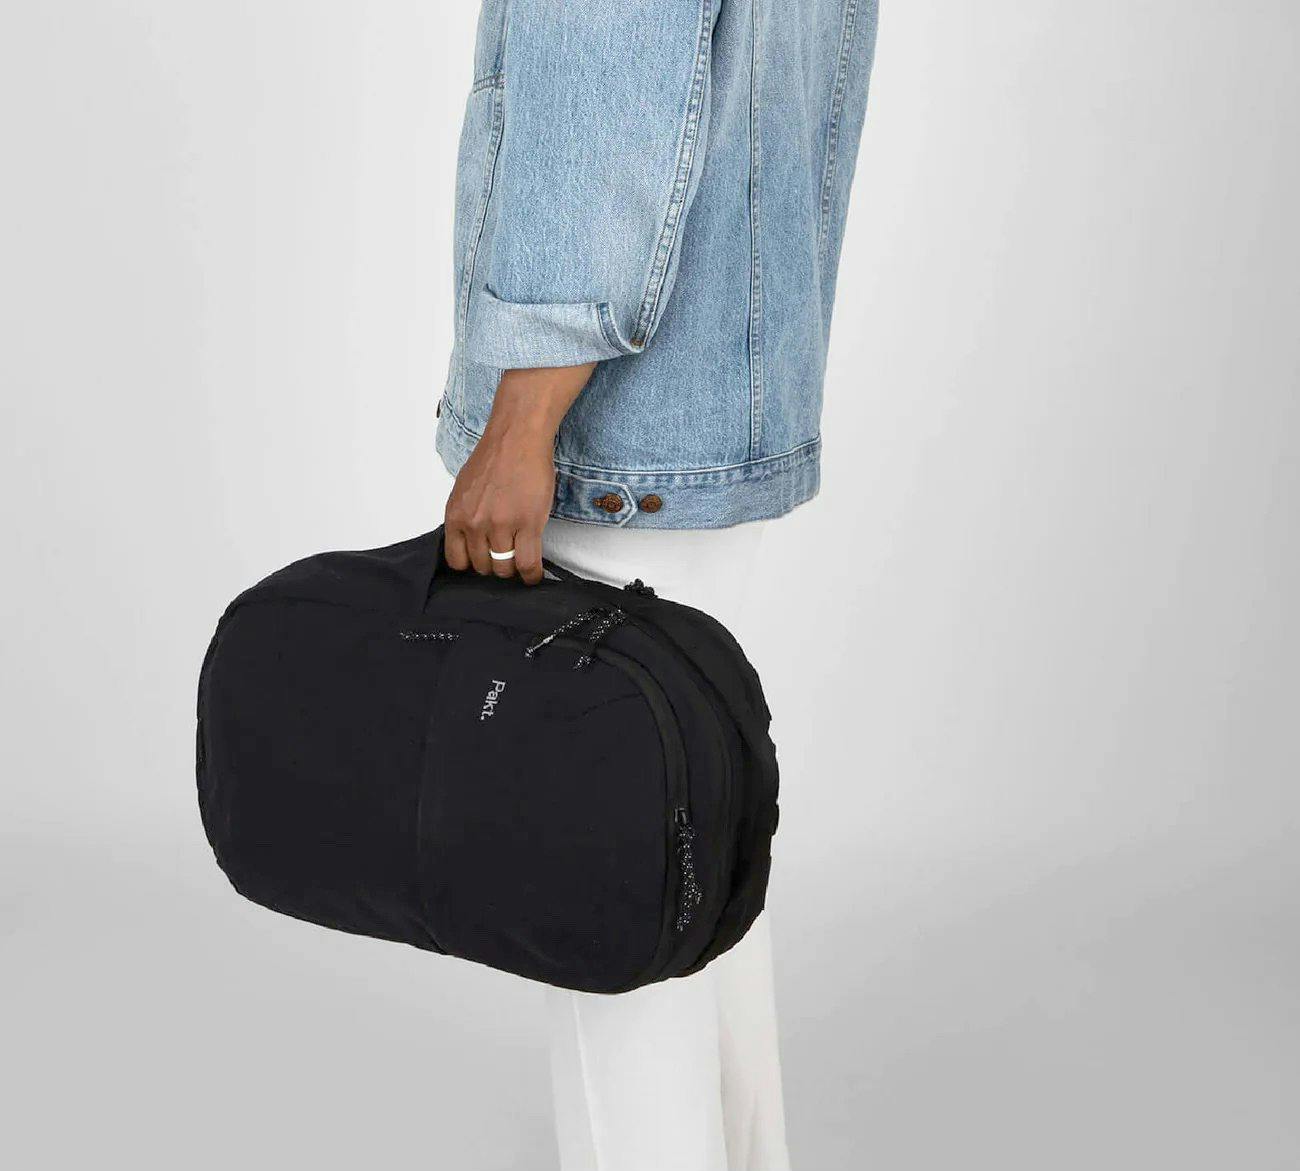 Pakt Everyday Backpack - 22L - Black, Backpacks